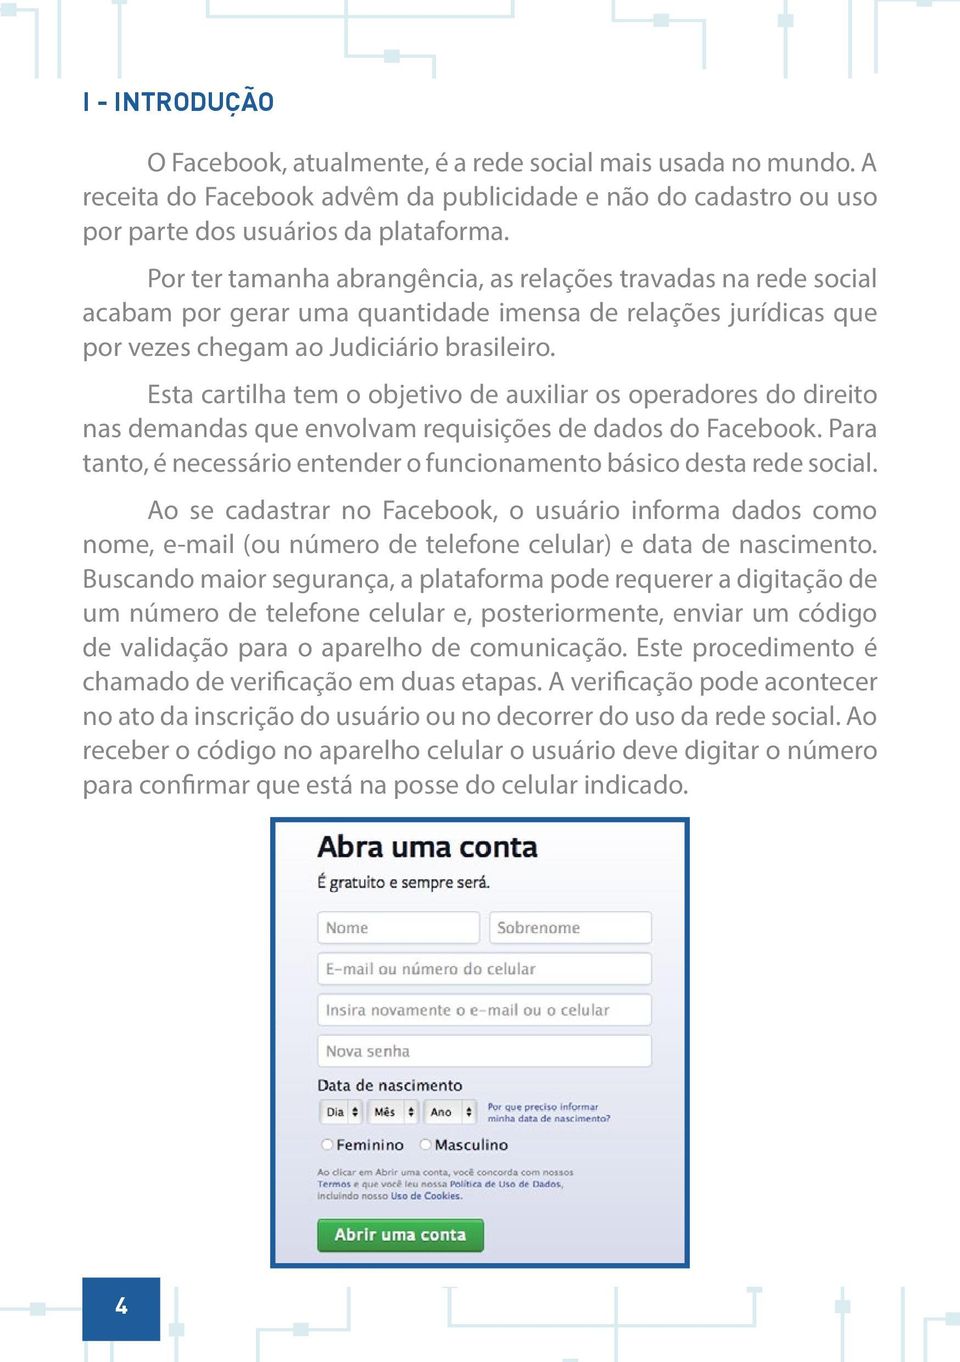 Esta cartilha tem o objetivo de auxiliar os operadores do direito nas demandas que envolvam requisições de dados do Facebook.